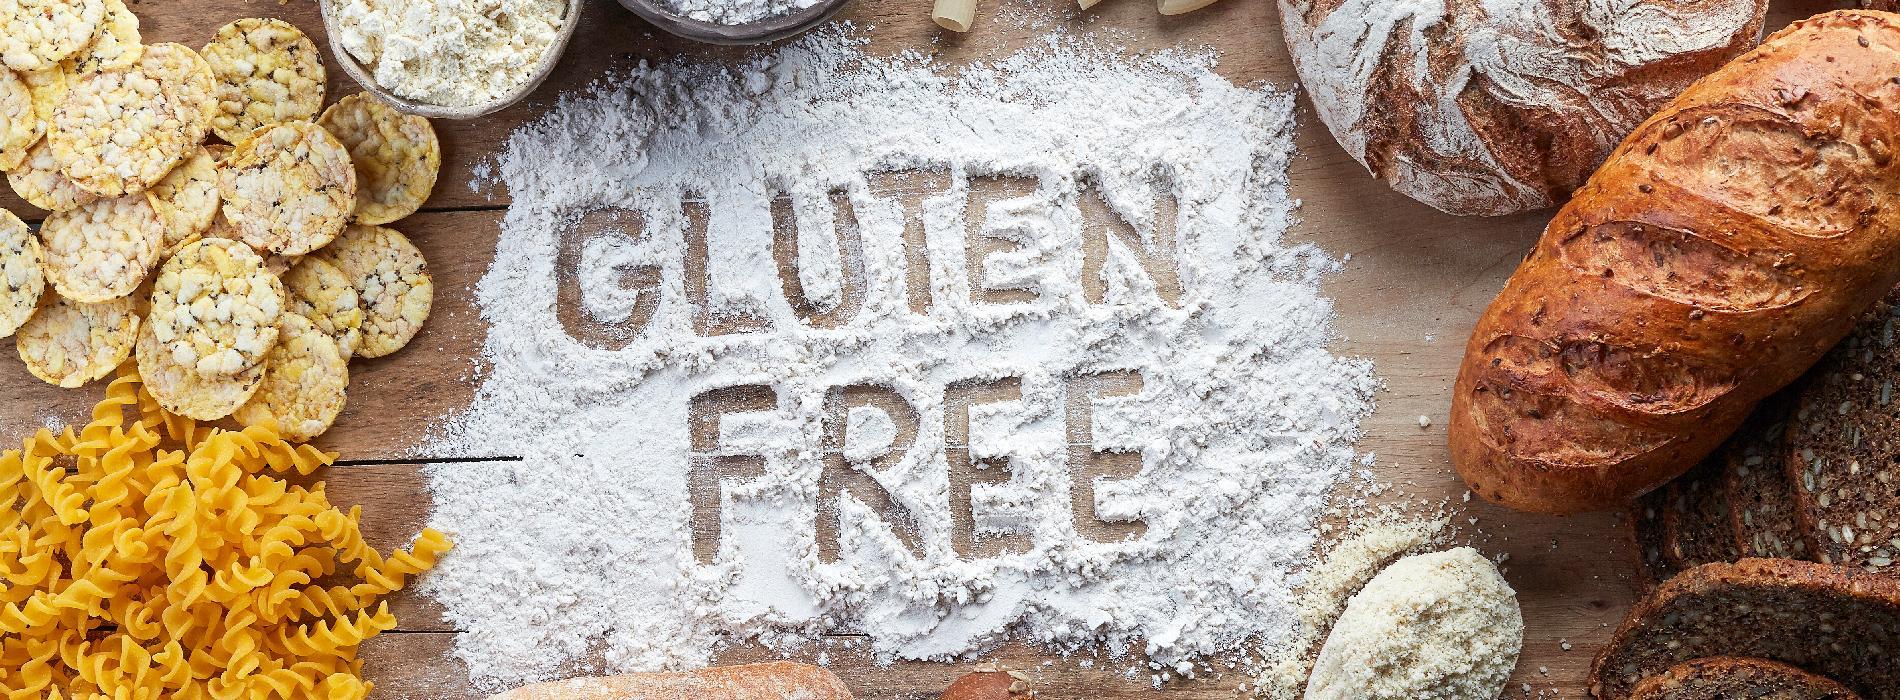 Alergia na gluten - jak ją zdiagnozować i leczyć?